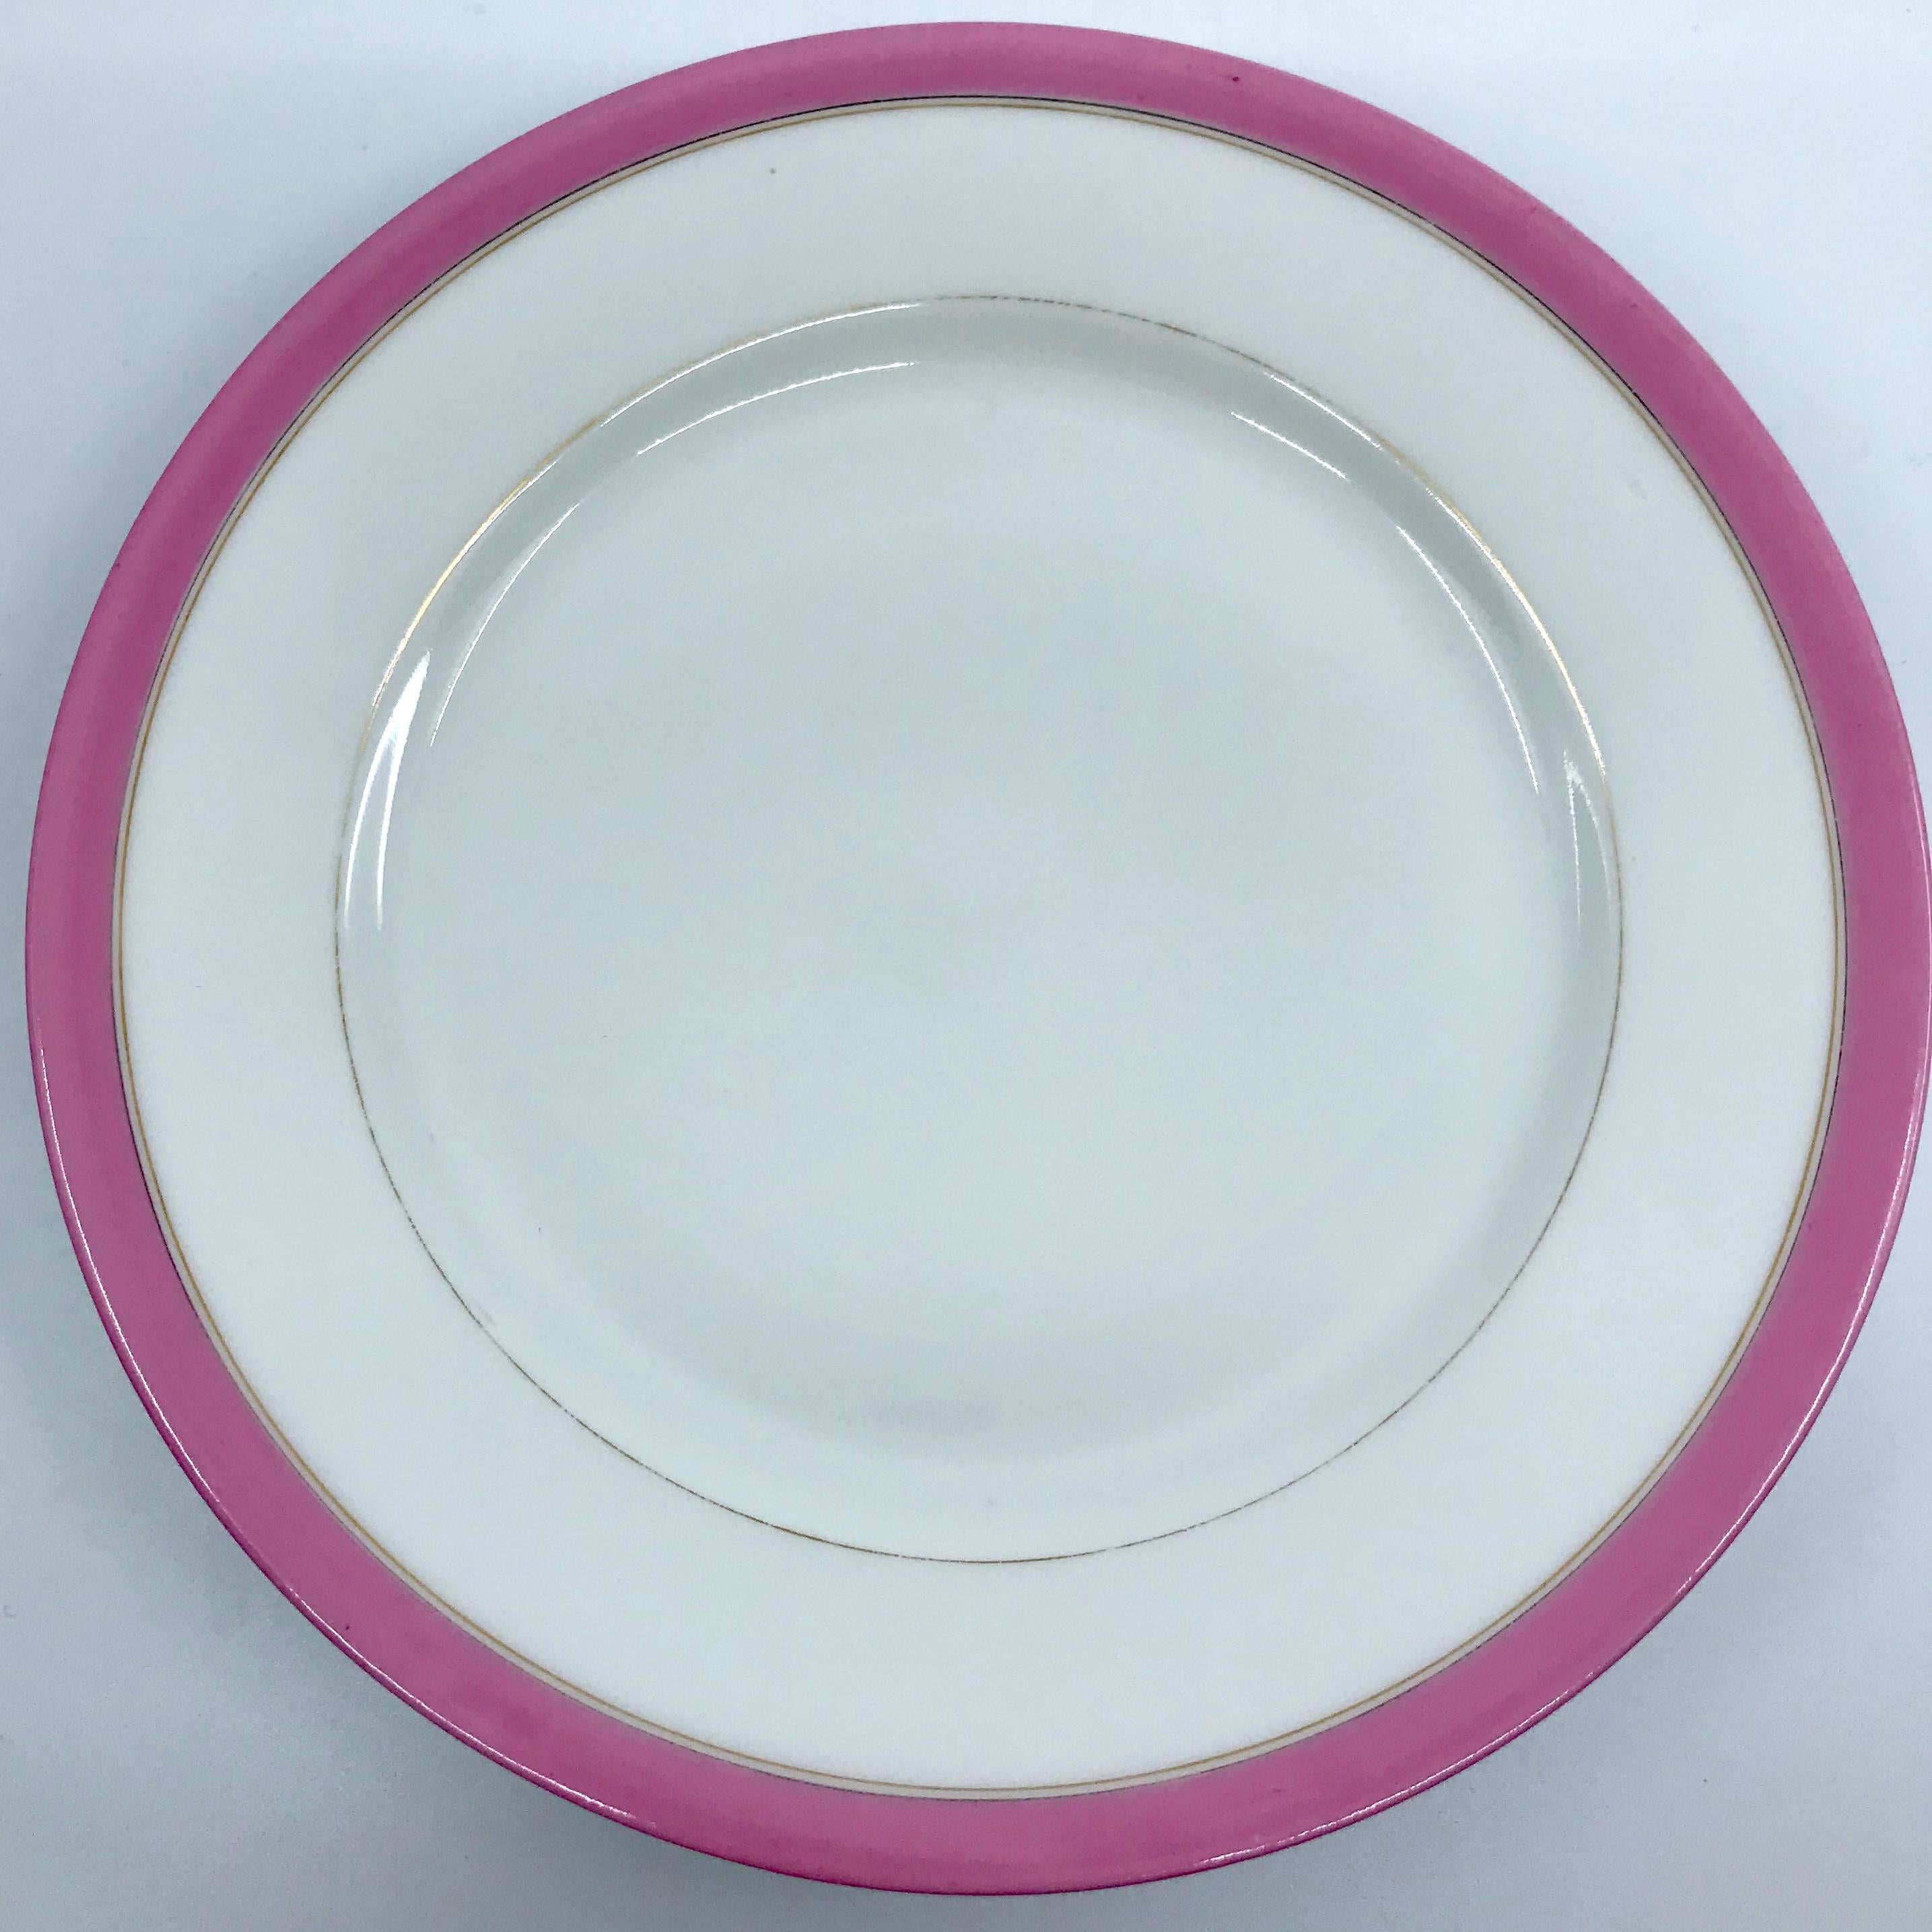 Satz von vier französischen rosa und vergoldeten Tellern. Dessertteller mit weißem Grund, umrandet mit einem zartrosa Band und vergoldeten Rändern, Frankreich, Anfang 20. Jahrhundert.
Abmessungen: 7.88